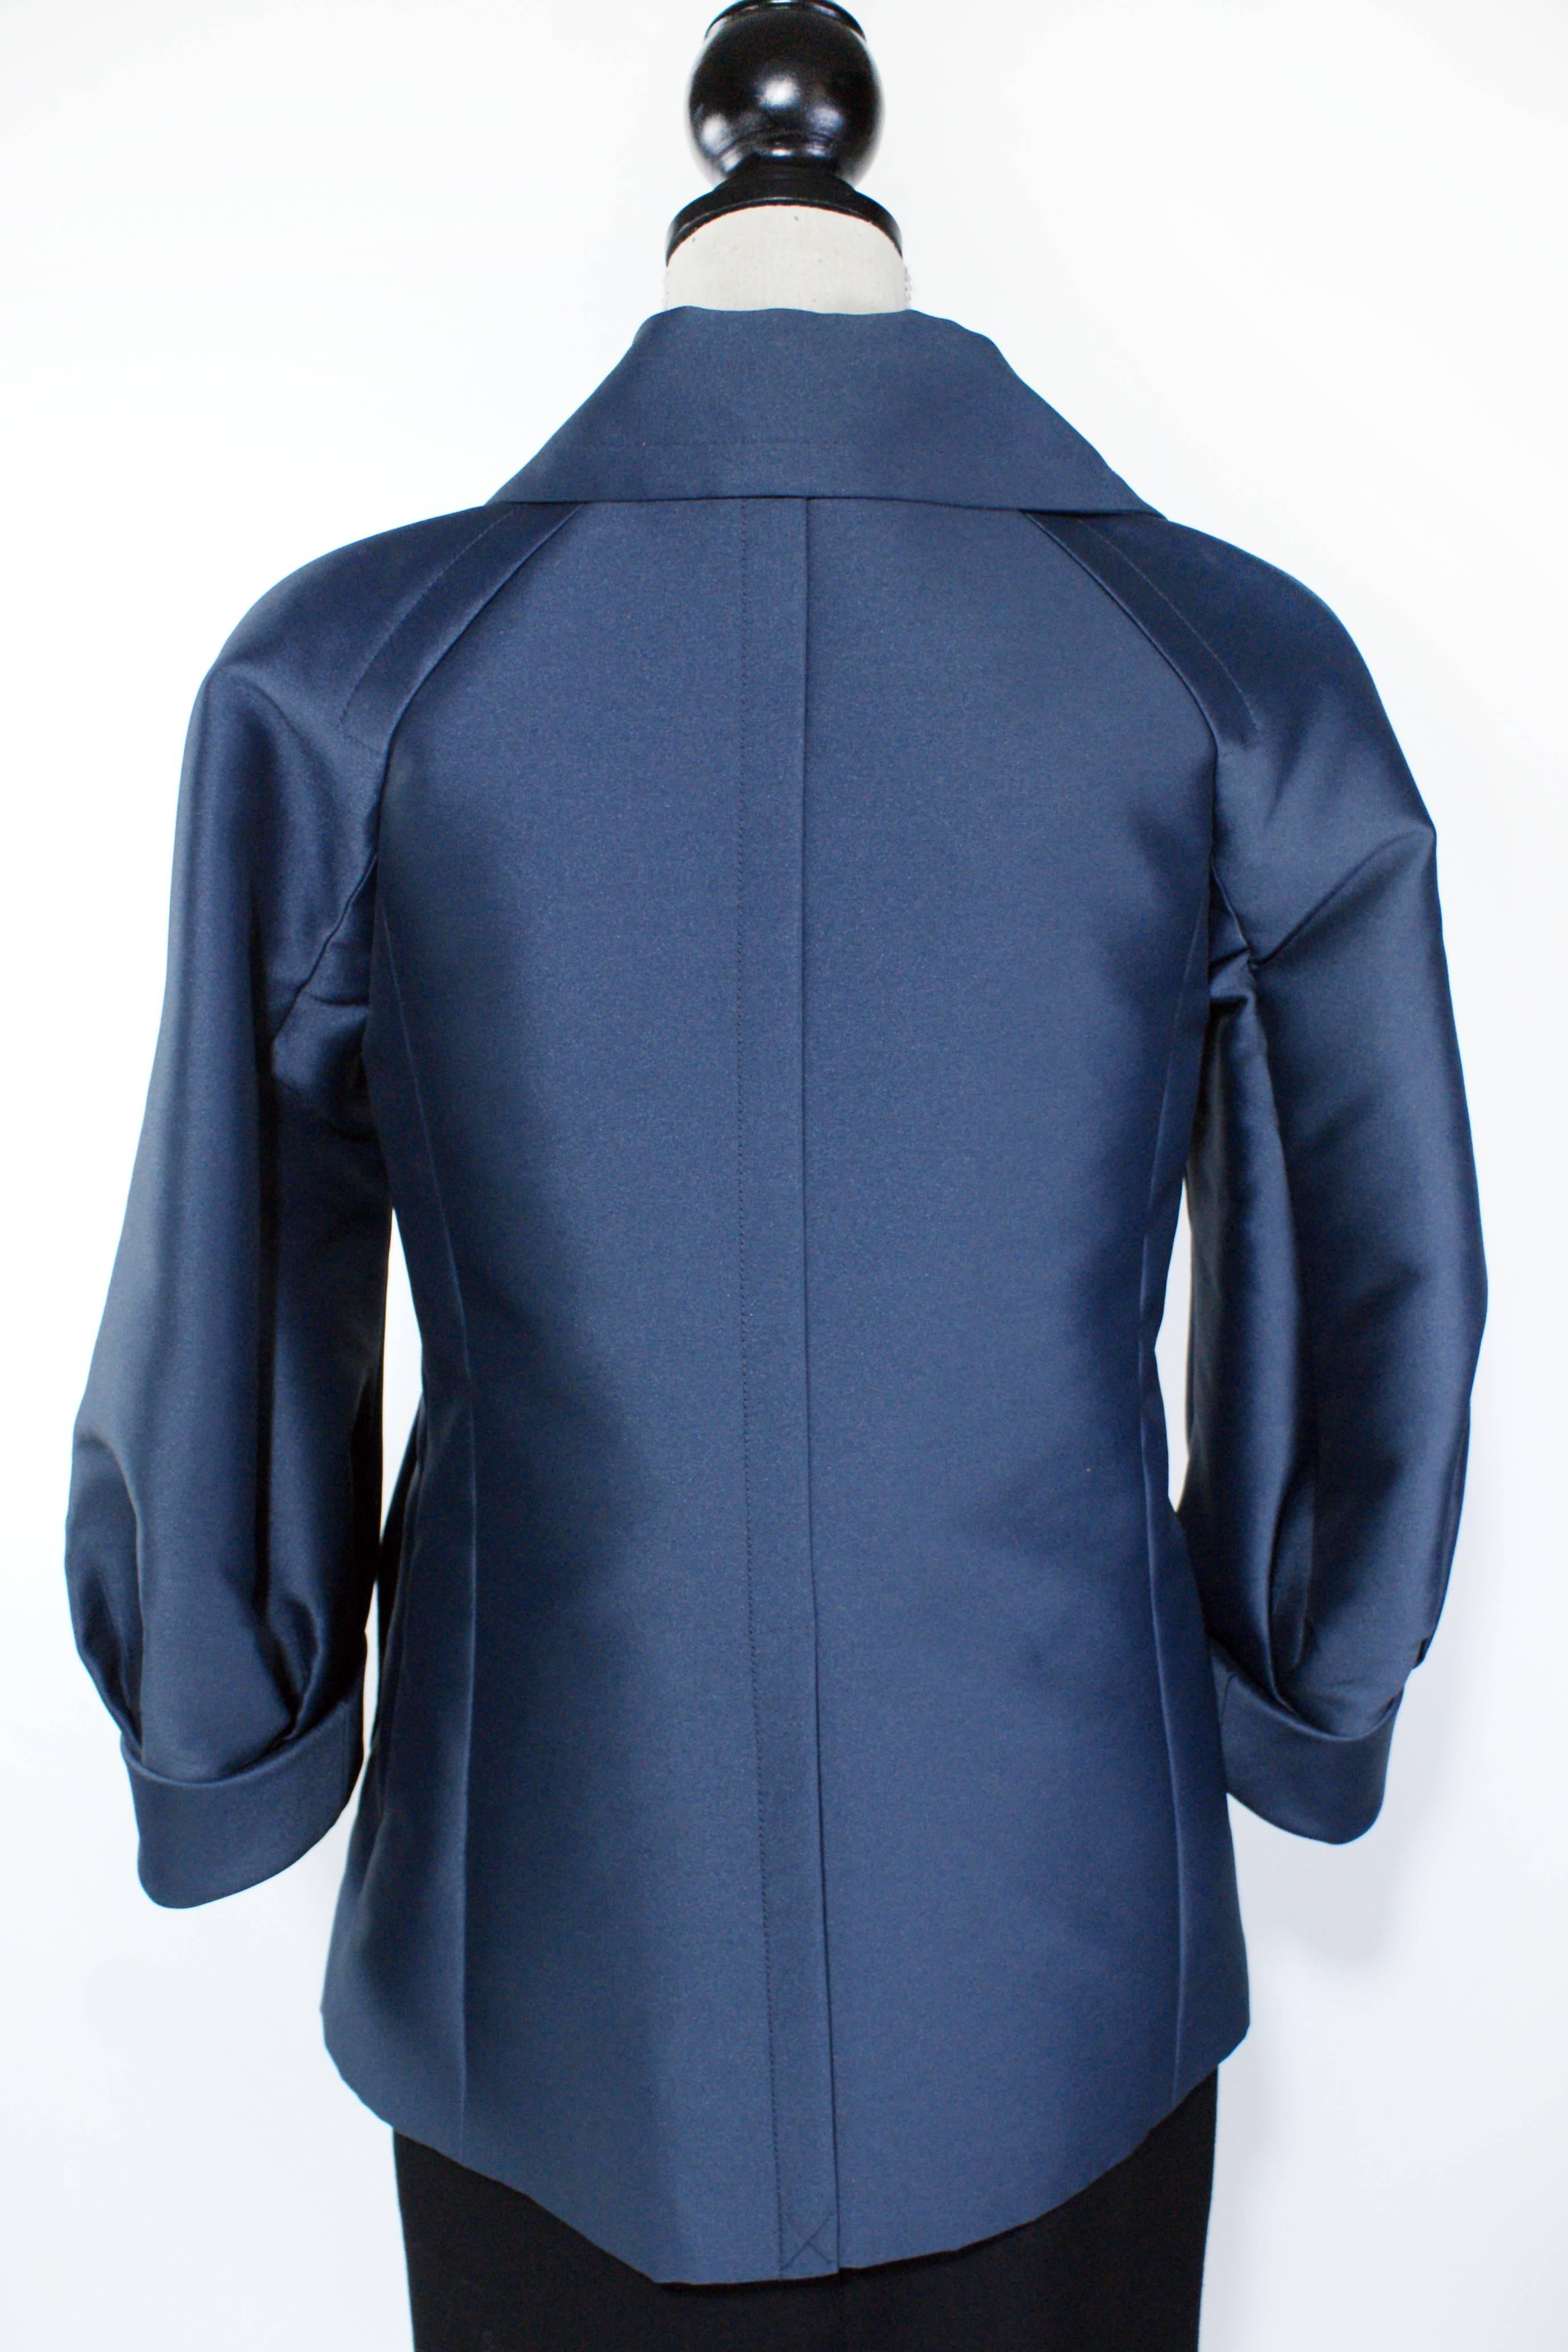 Women's Marc Jacobs Navy Blue Coat